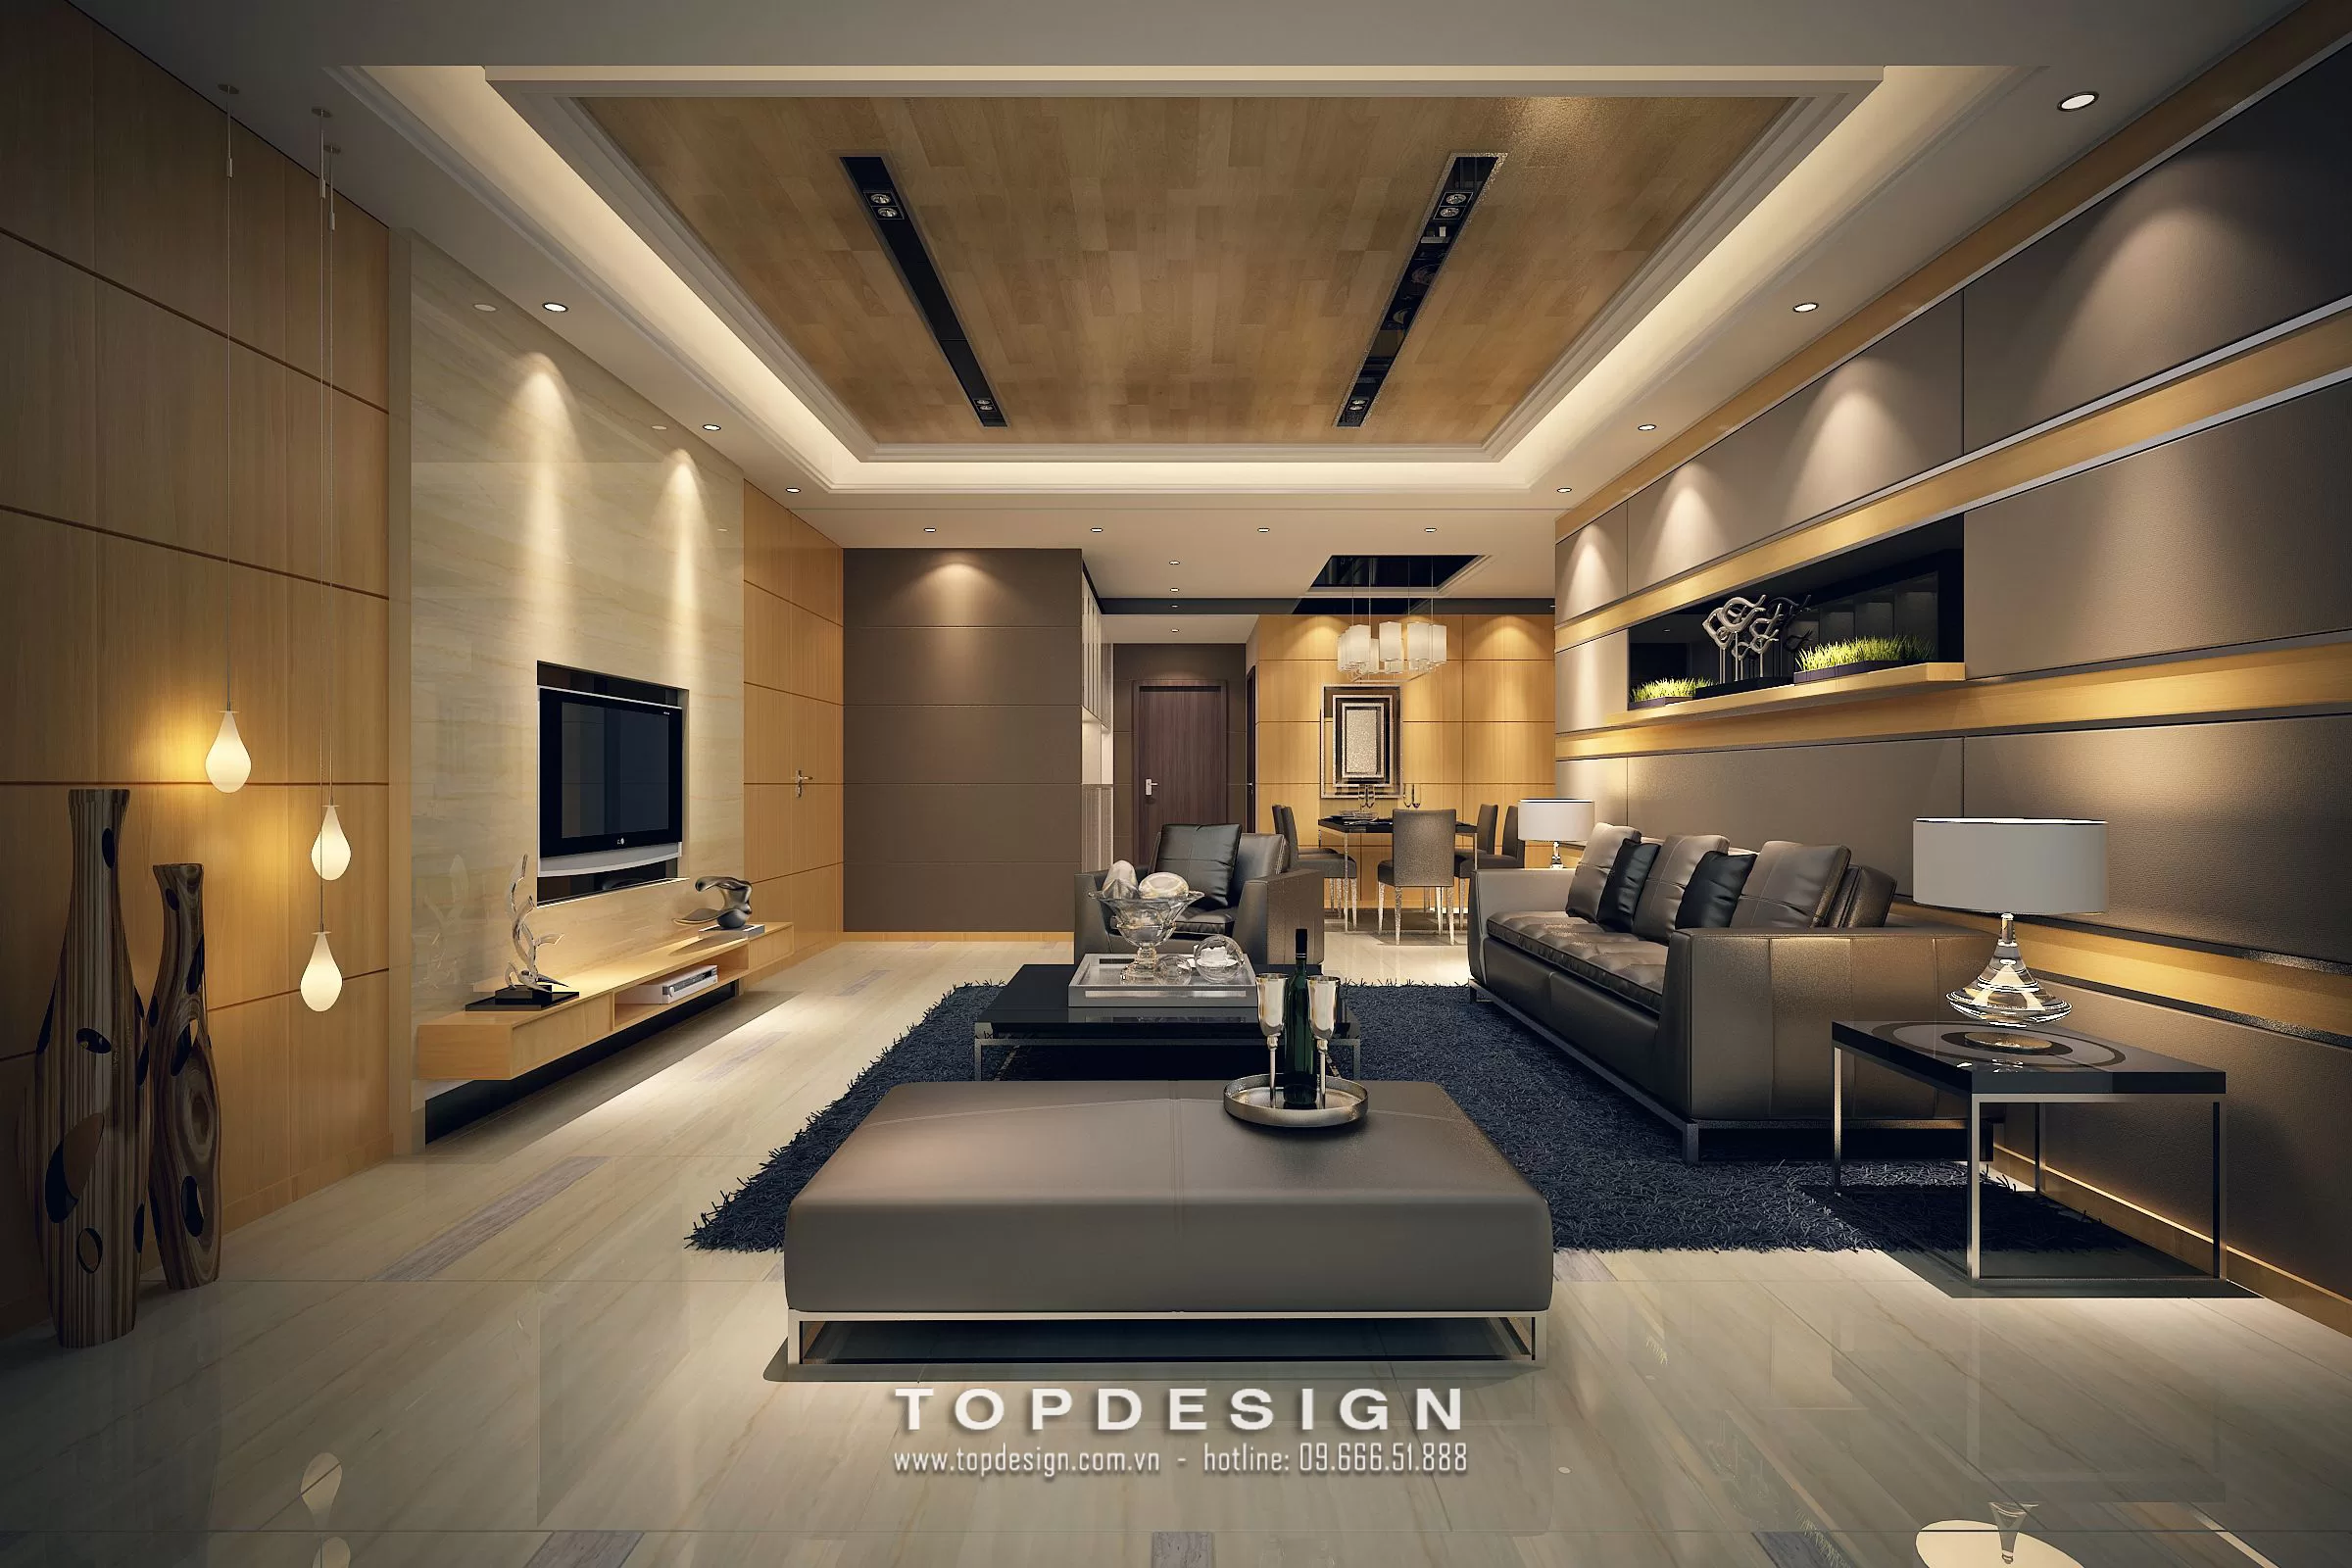 6. Bảng giá dịch vụ thiết kế nội thất- Topdesign